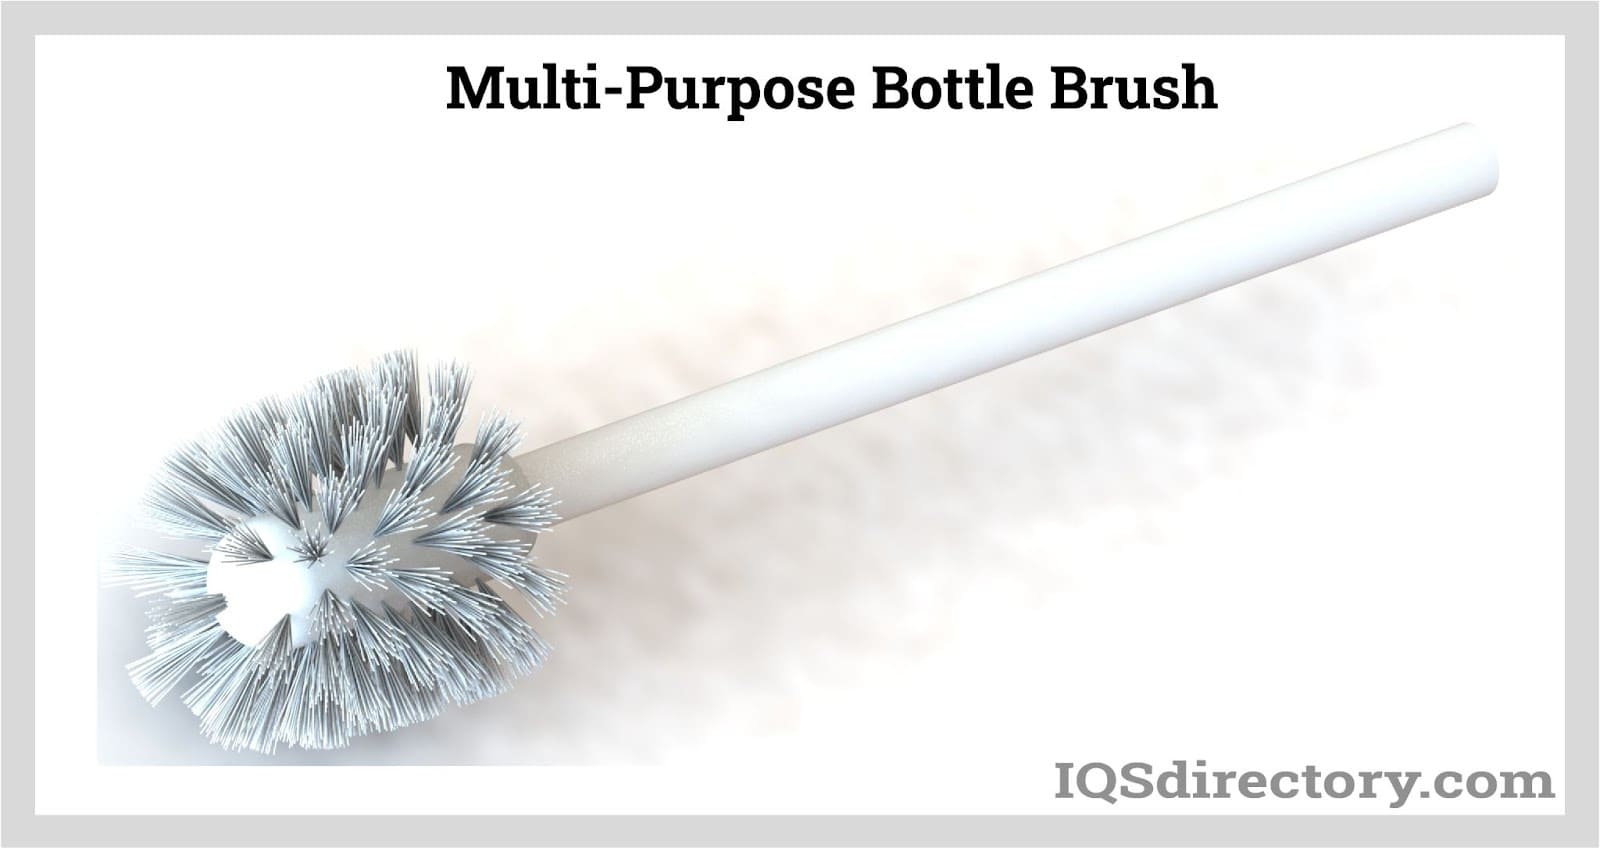 The Best Bottle Brushes